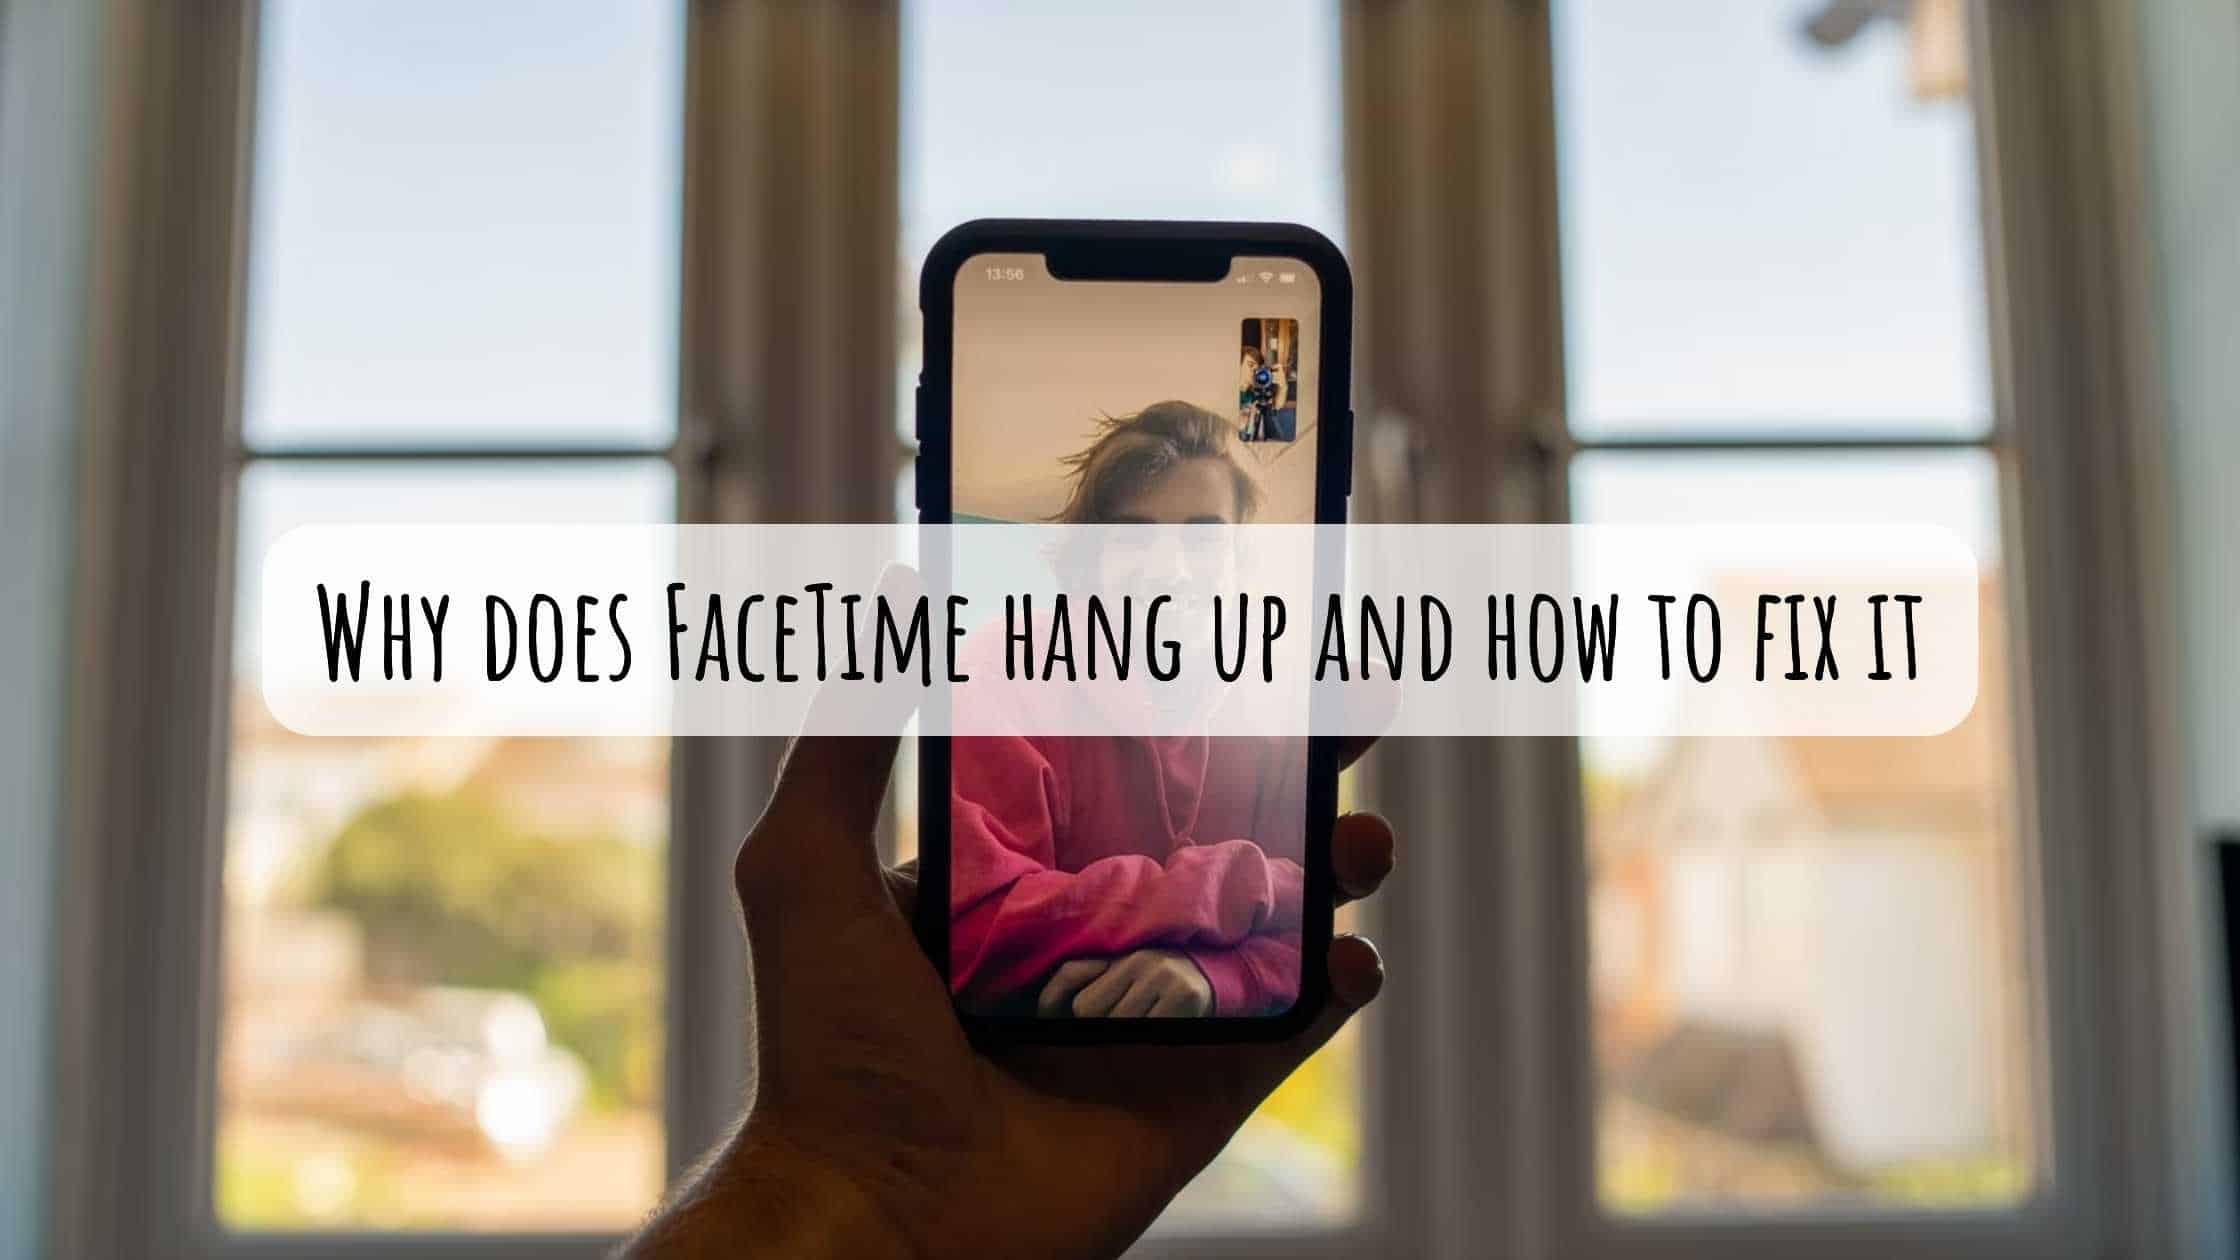 Henger en alarm opp en FaceTime -samtale?